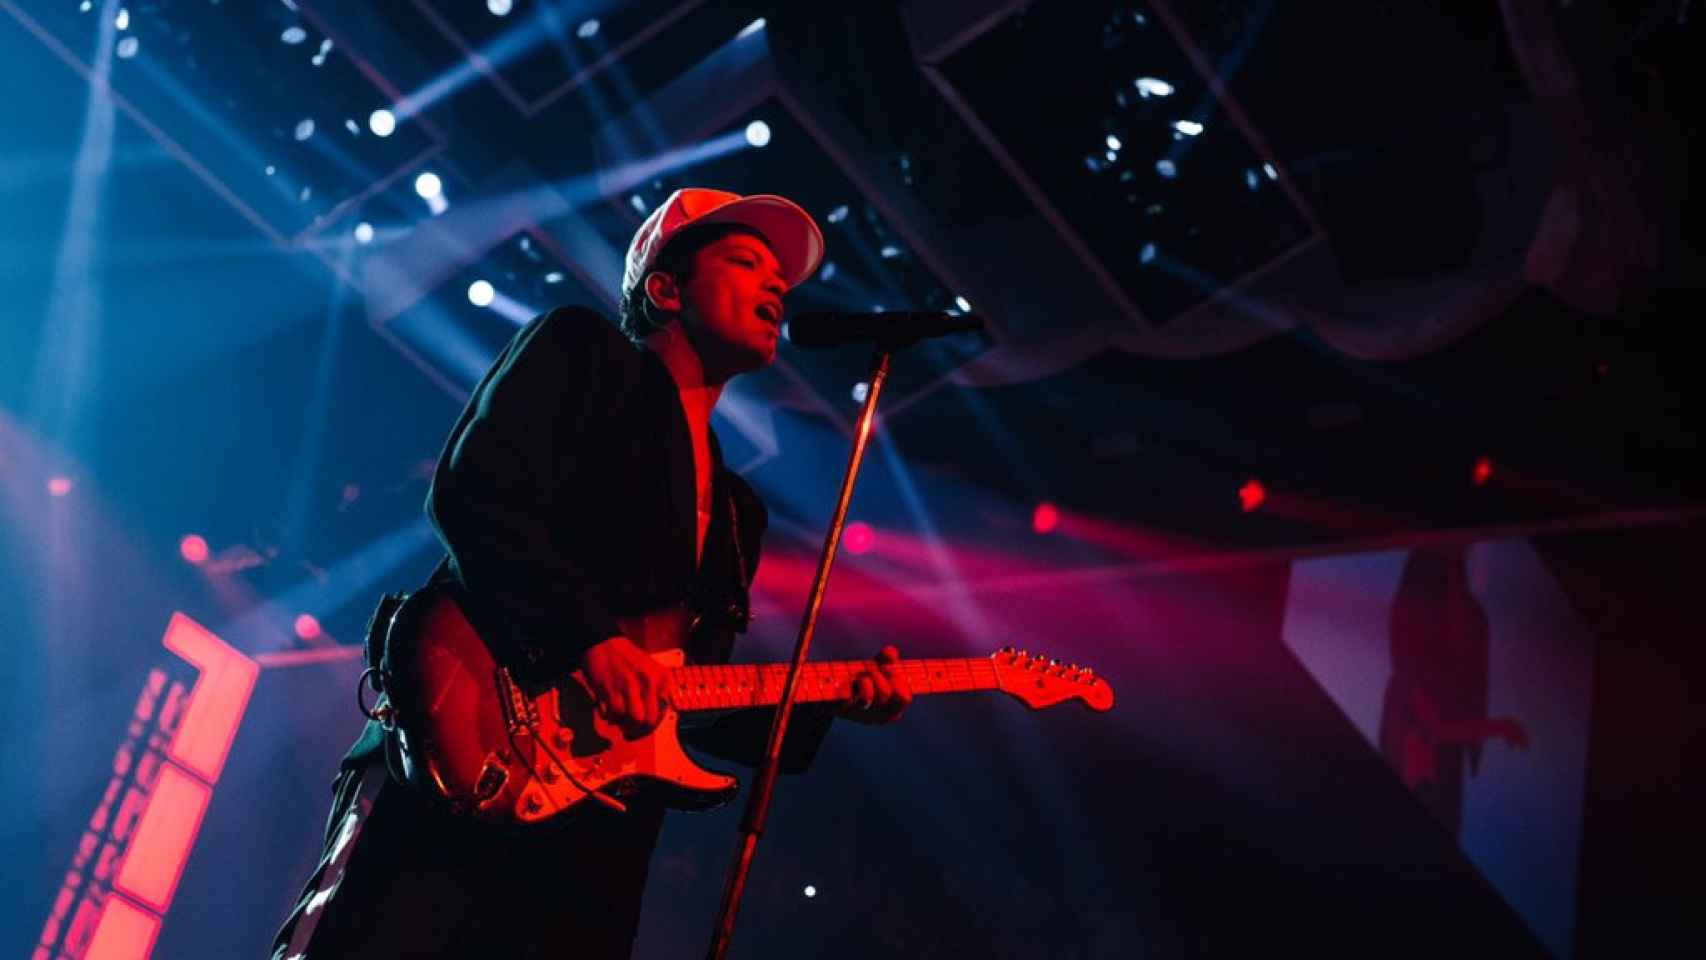 Bruno Mars actuó anoche en el Palau Sant Jordi / CD